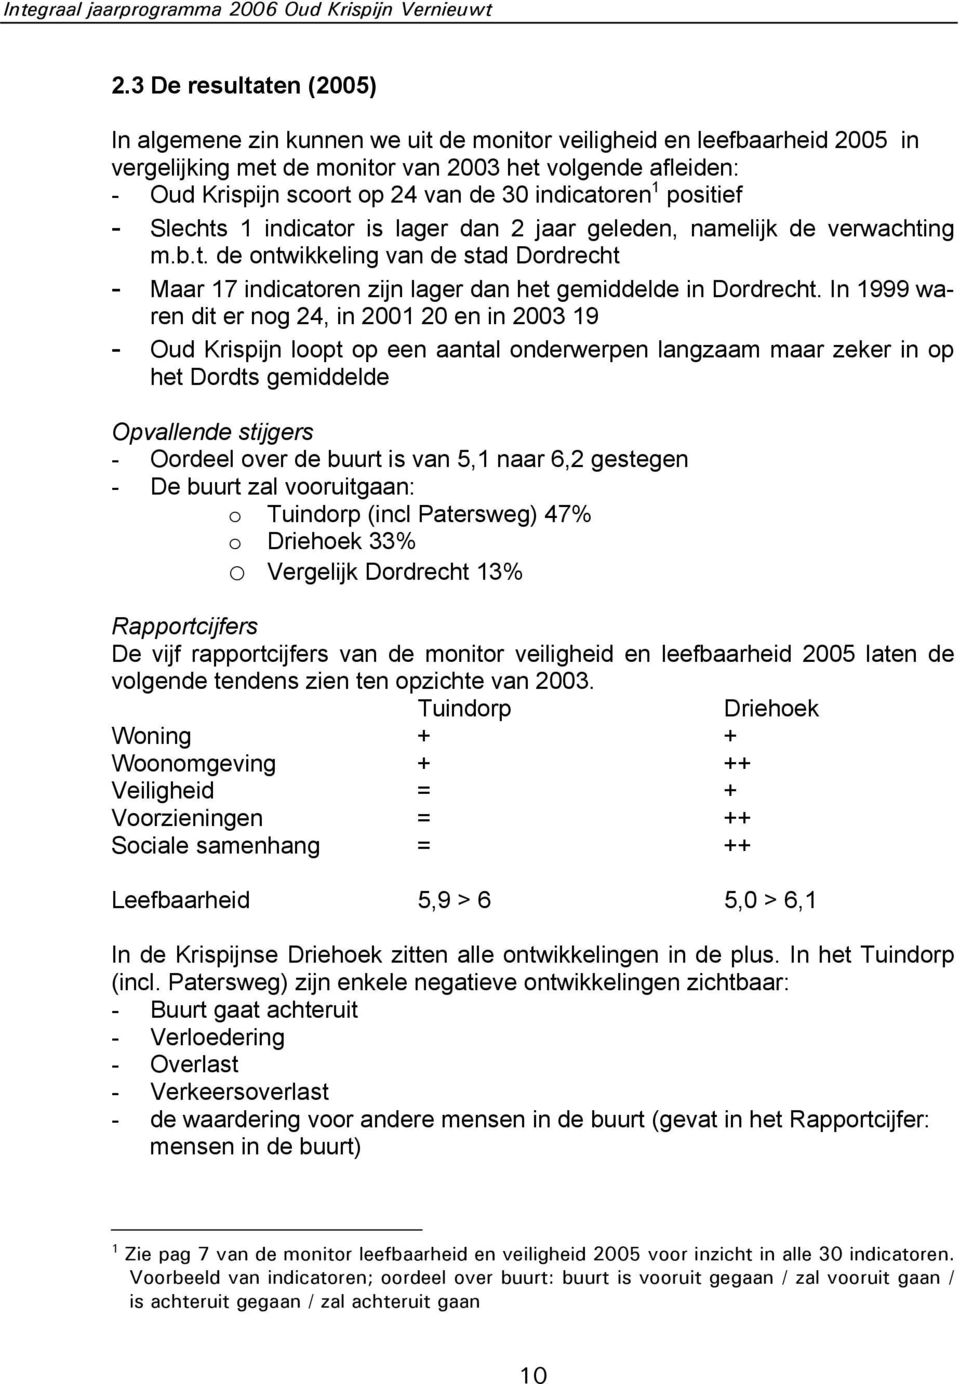 indicatoren 1 positief - Slechts 1 indicator is lager dan 2 jaar geleden, namelijk de verwachting m.b.t. de ontwikkeling van de stad Dordrecht - Maar 17 indicatoren zijn lager dan het gemiddelde in Dordrecht.